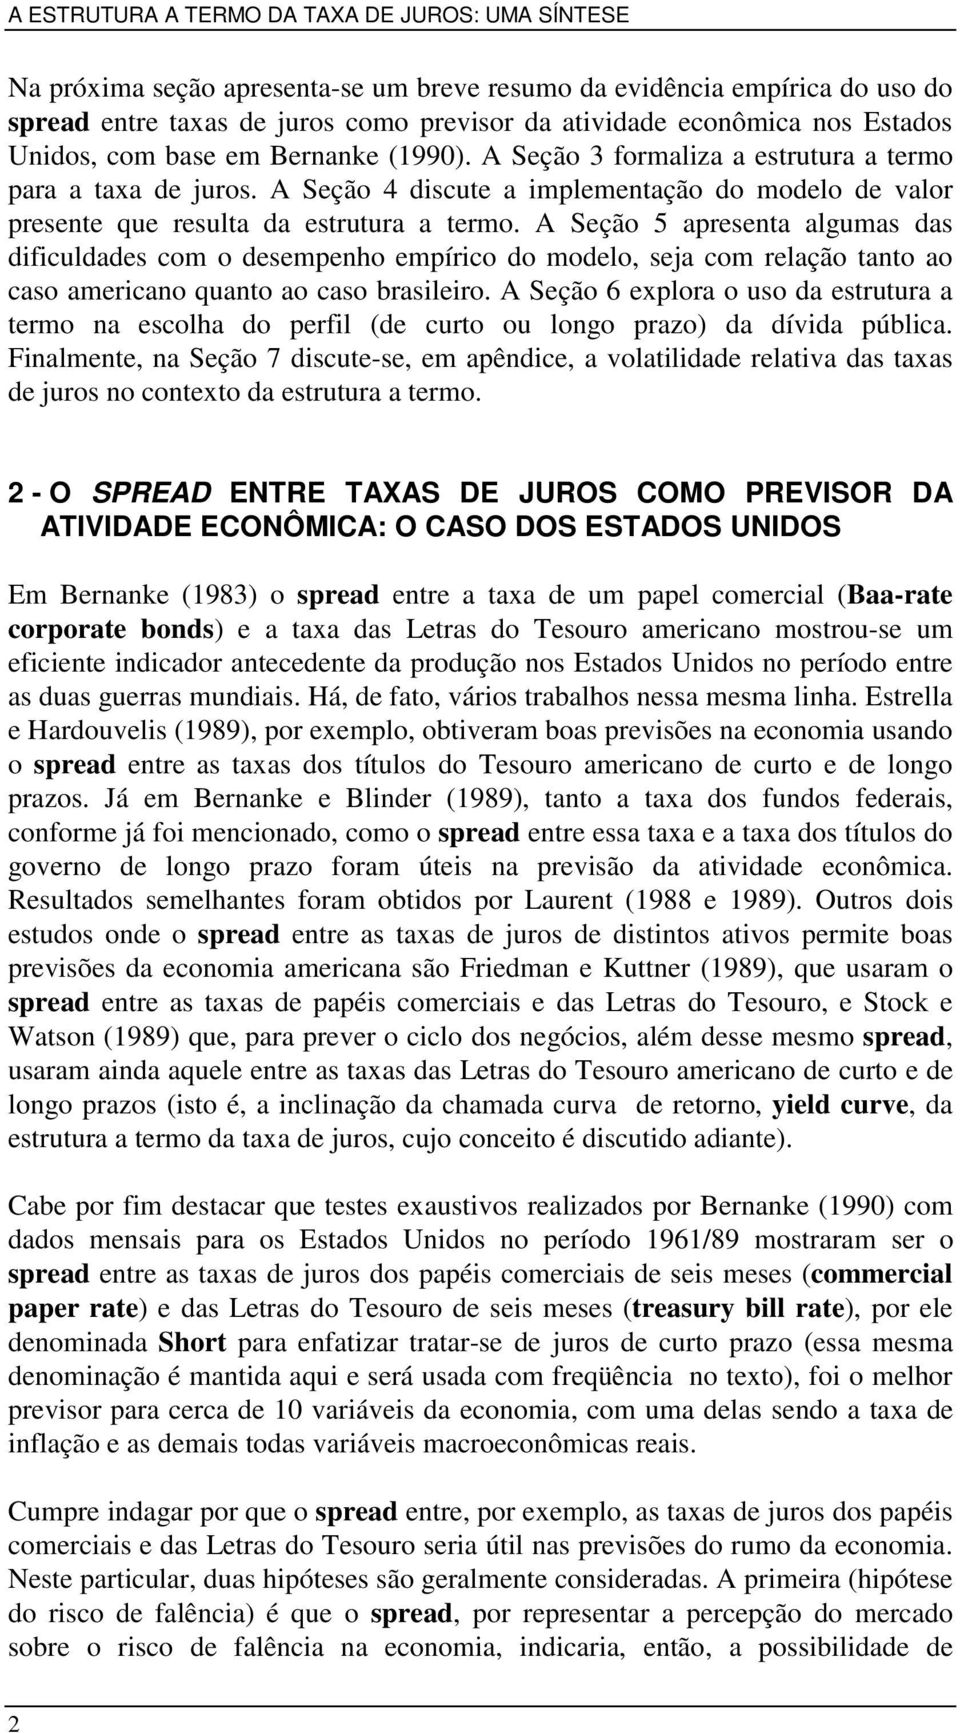 A Seção 5 apresea algumas das dfculdades com o desempeho empírco do modelo, seja com relação ao ao caso amercao quao ao caso braslero.